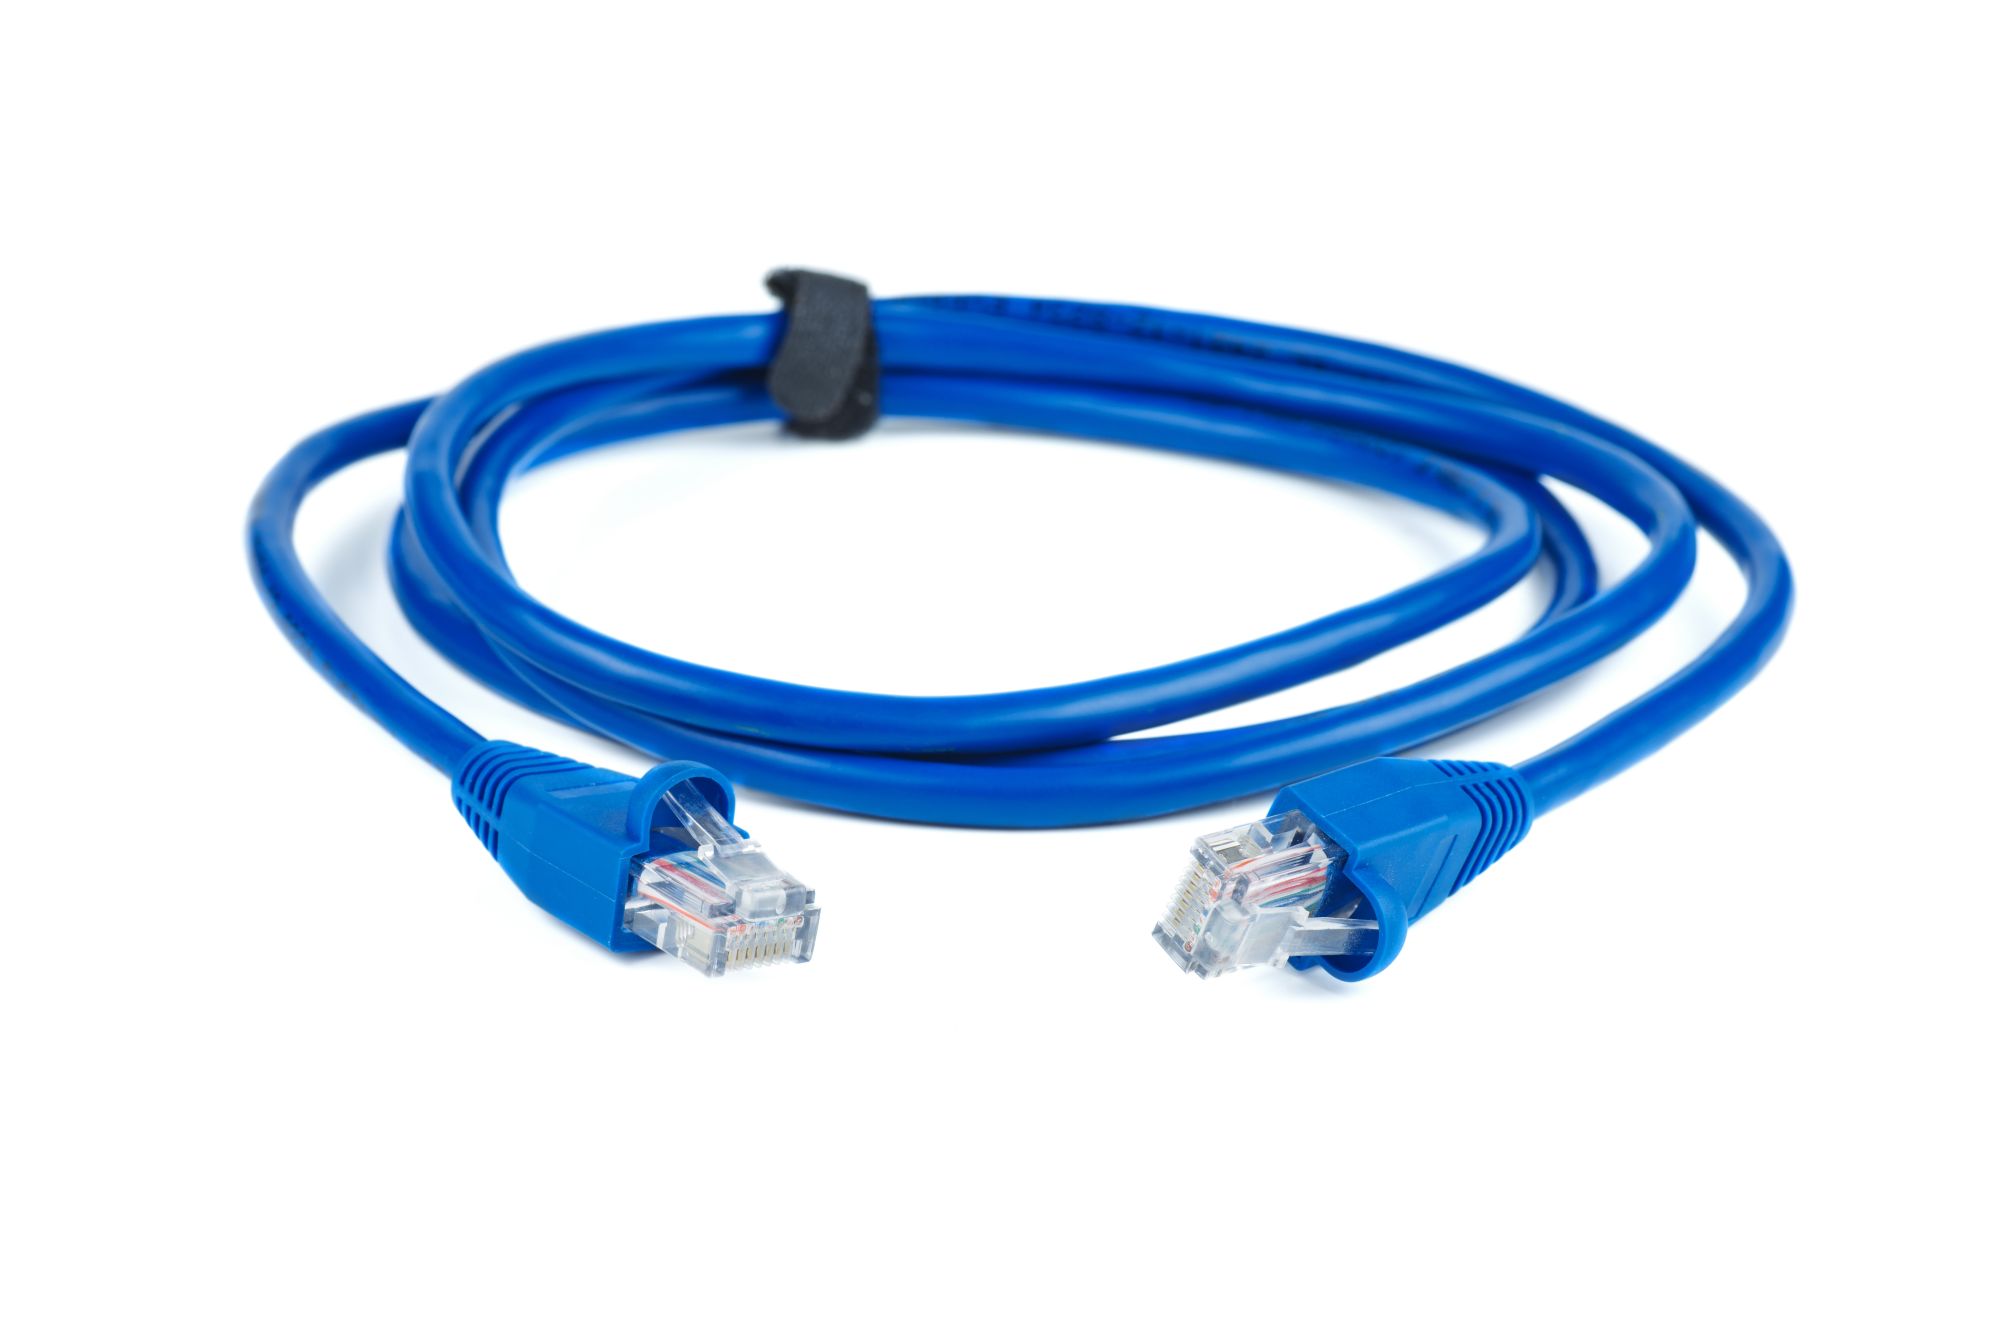 Niebieski kabel Ethernet RJ45 na białym tle